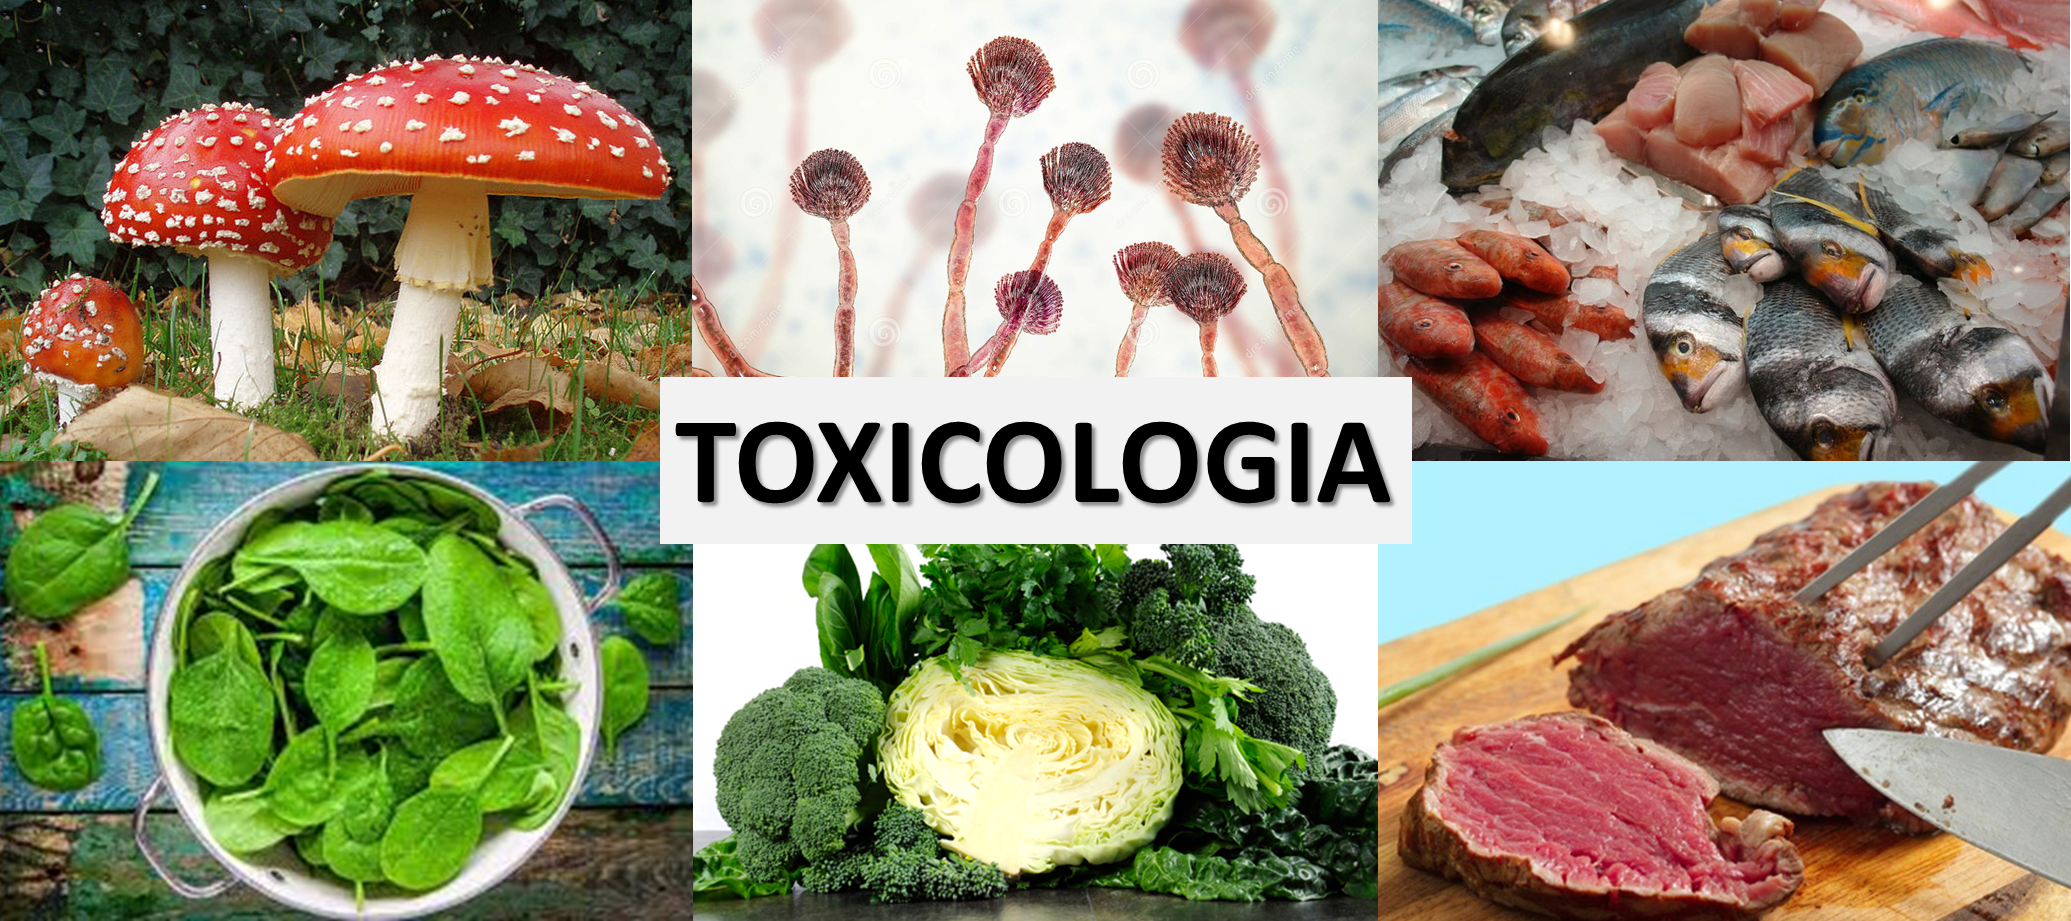 toxicologia de alimentos